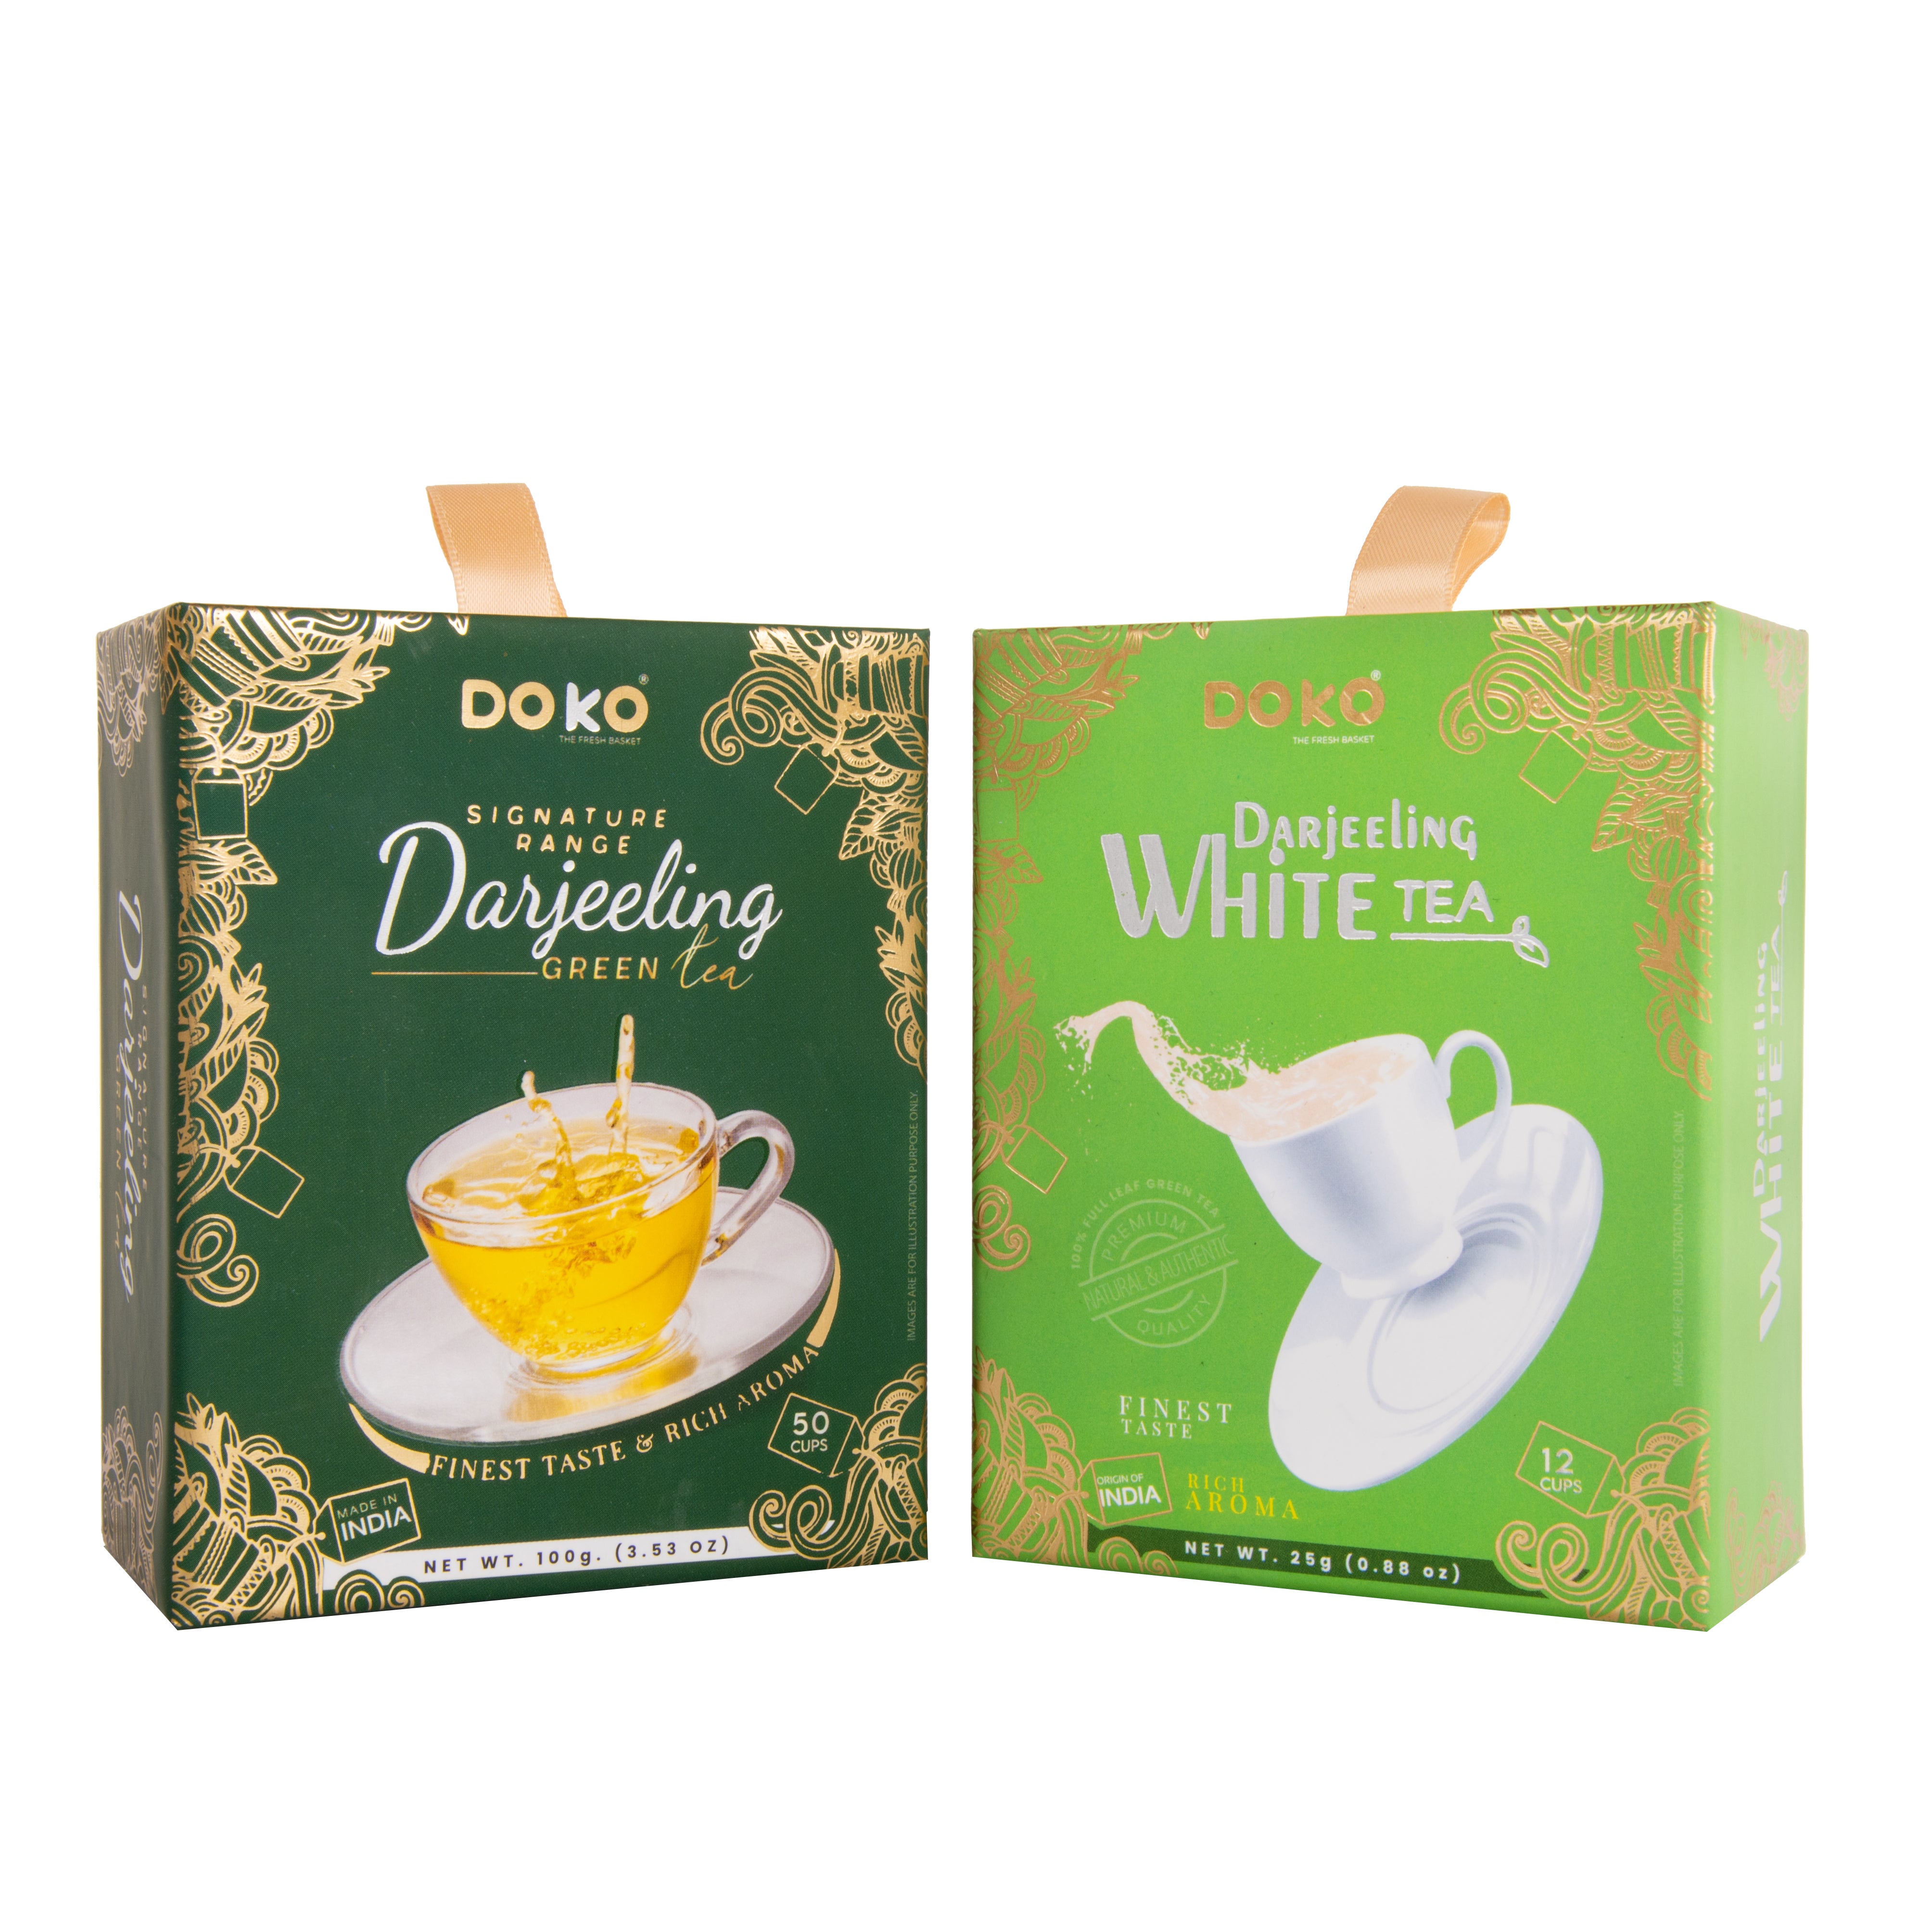 Rising Pearl Darjeeling Green Tea (Pack of 2)